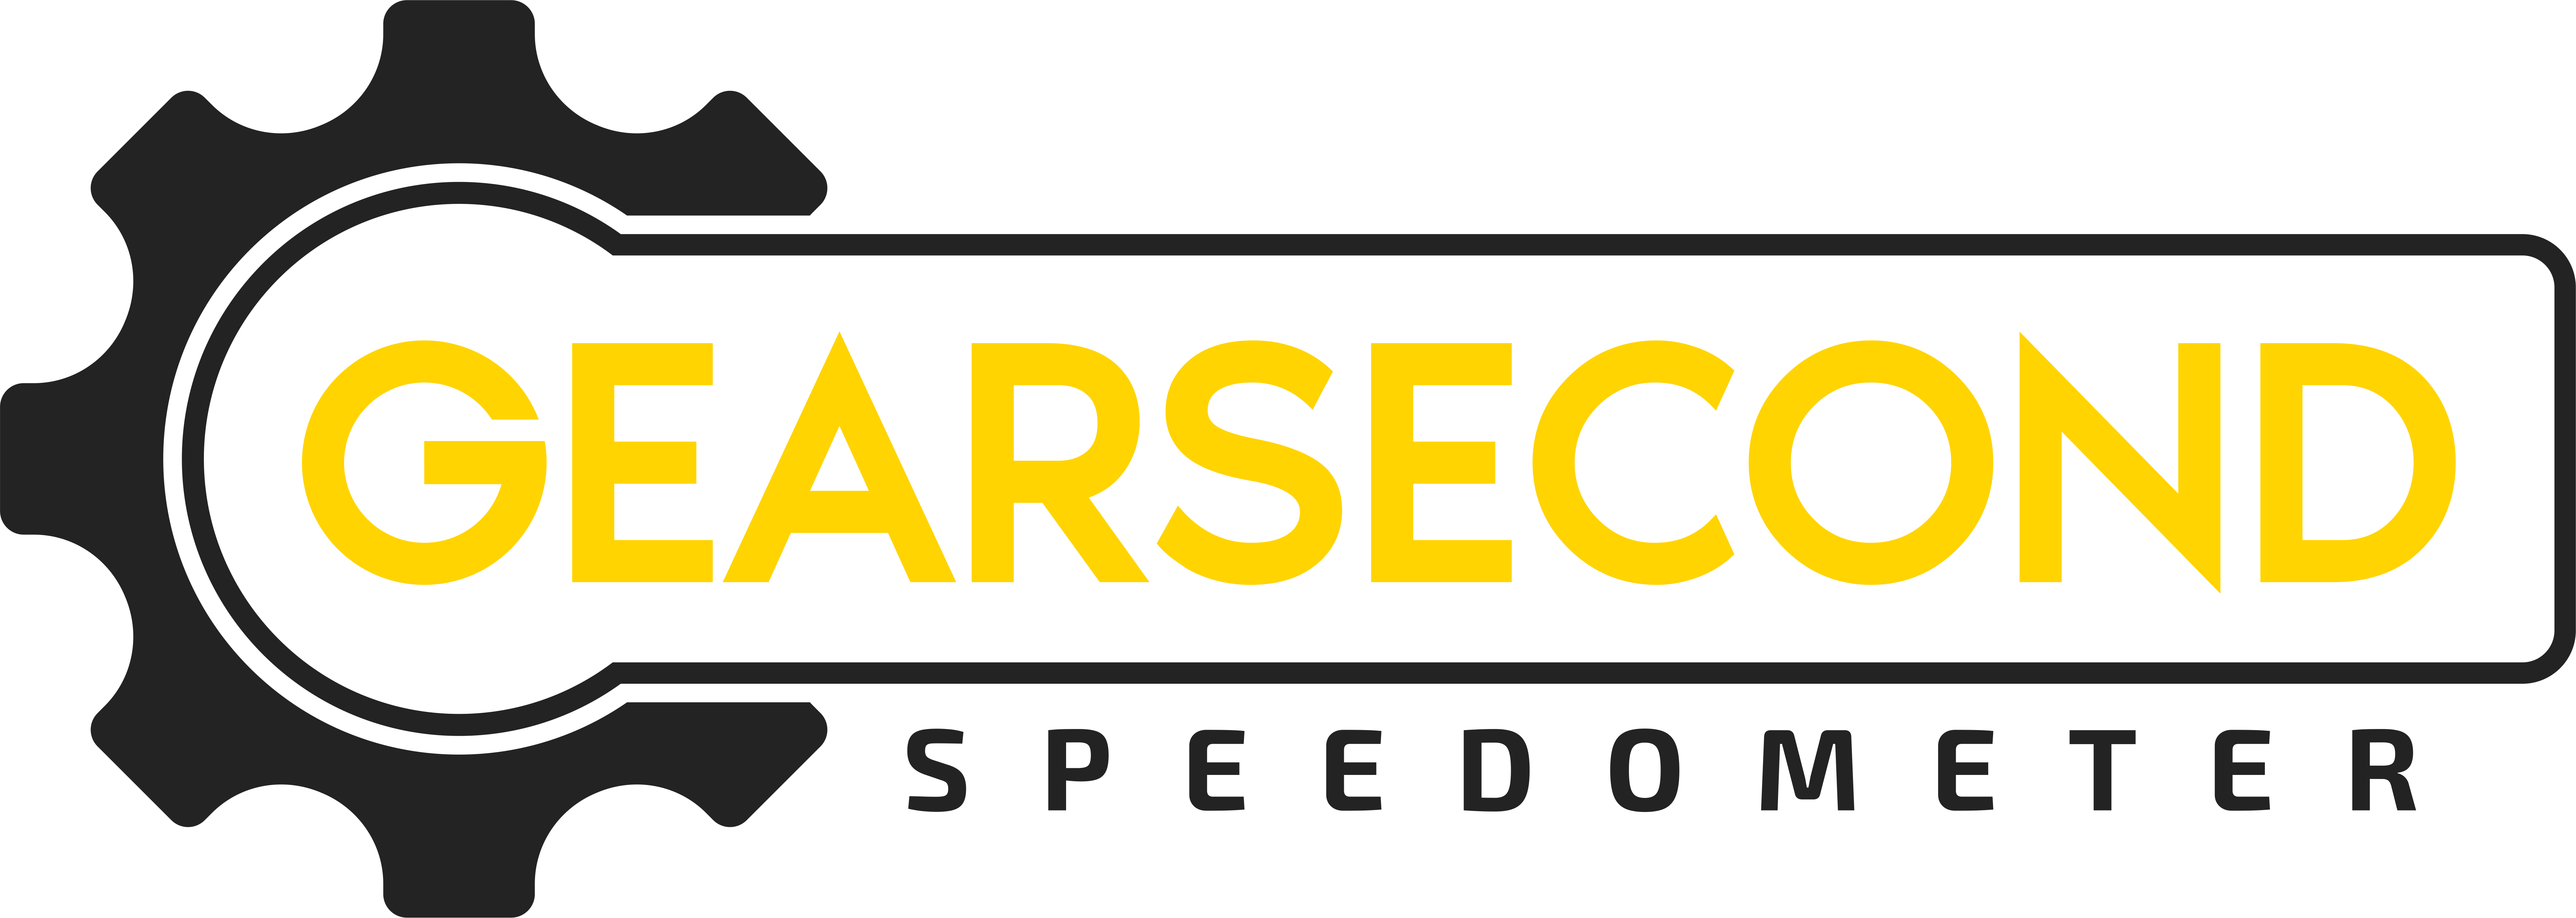 logo gearsecond speedometer png